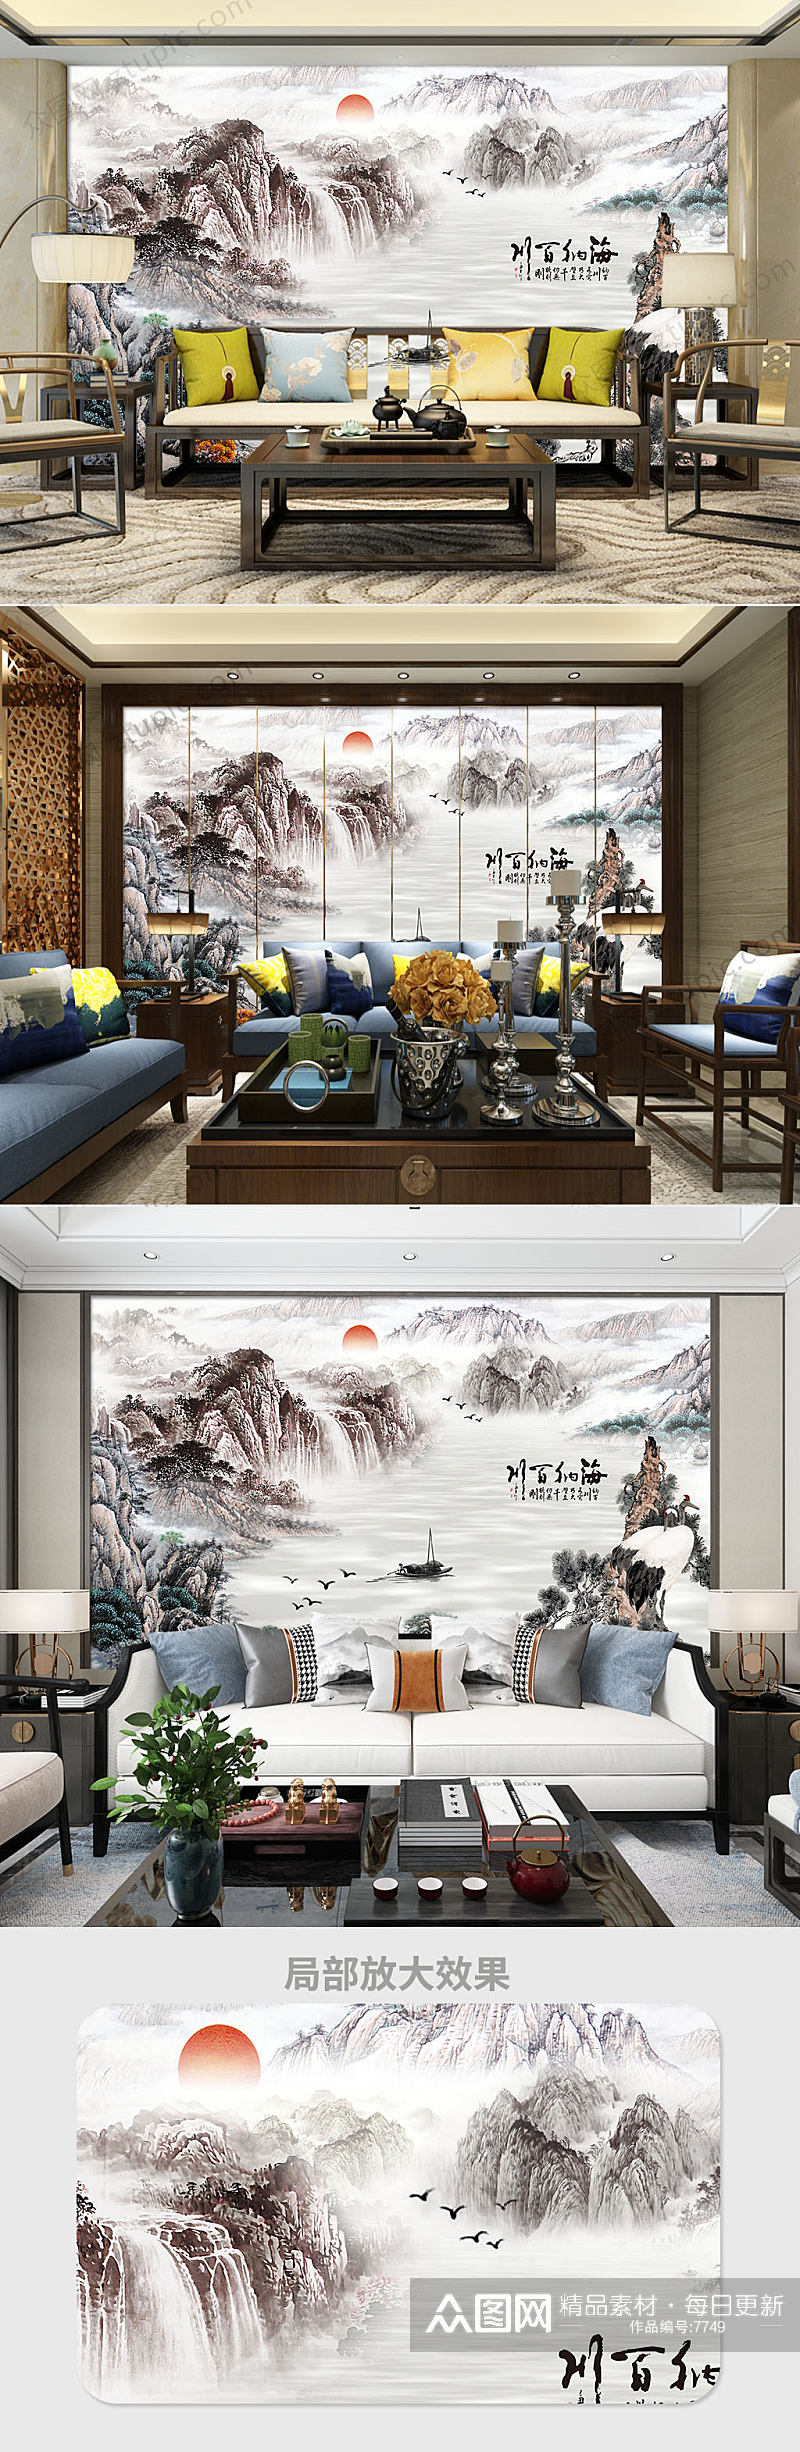 中式水墨山水风景国画背景墙素材